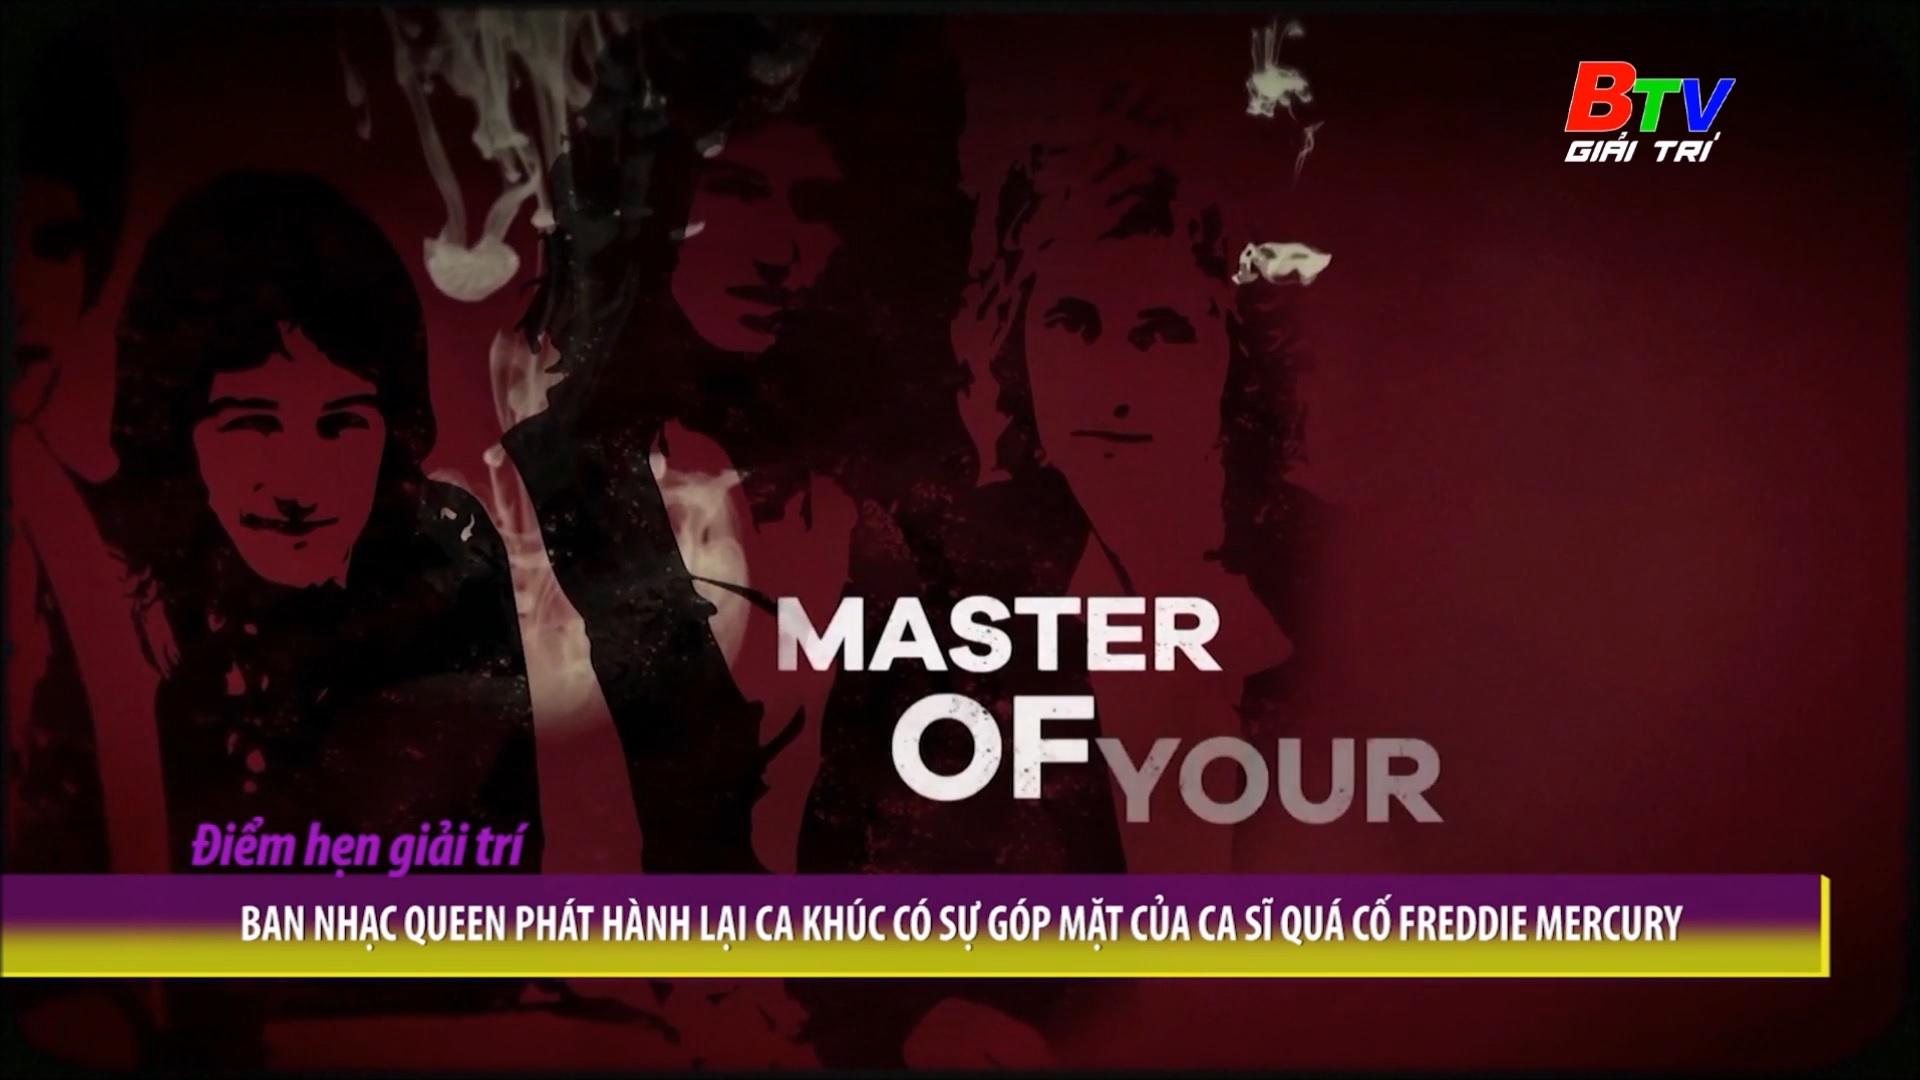 Ban nhạc Queen phát hành lại ca khúc có sự góp mặt của ca sĩ quá cố Freddie Mercury